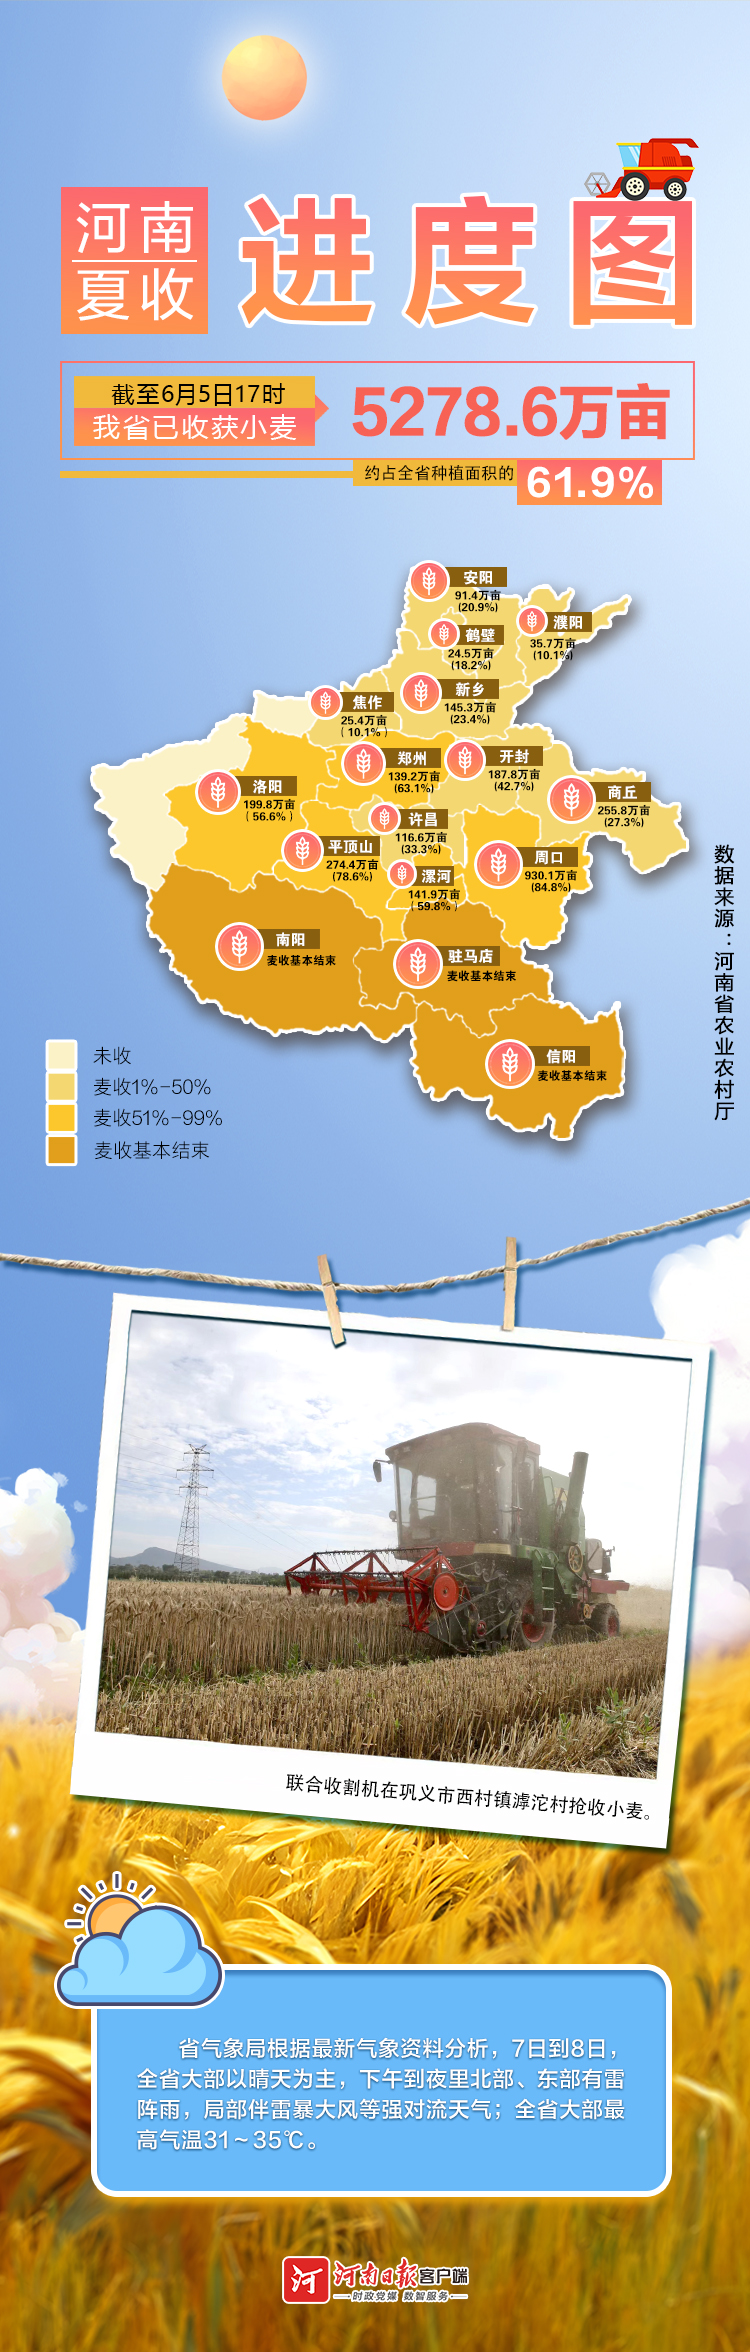 地图海报丨河南夏收进度图 麦收重心将转至黄河以北（截至6月5日）